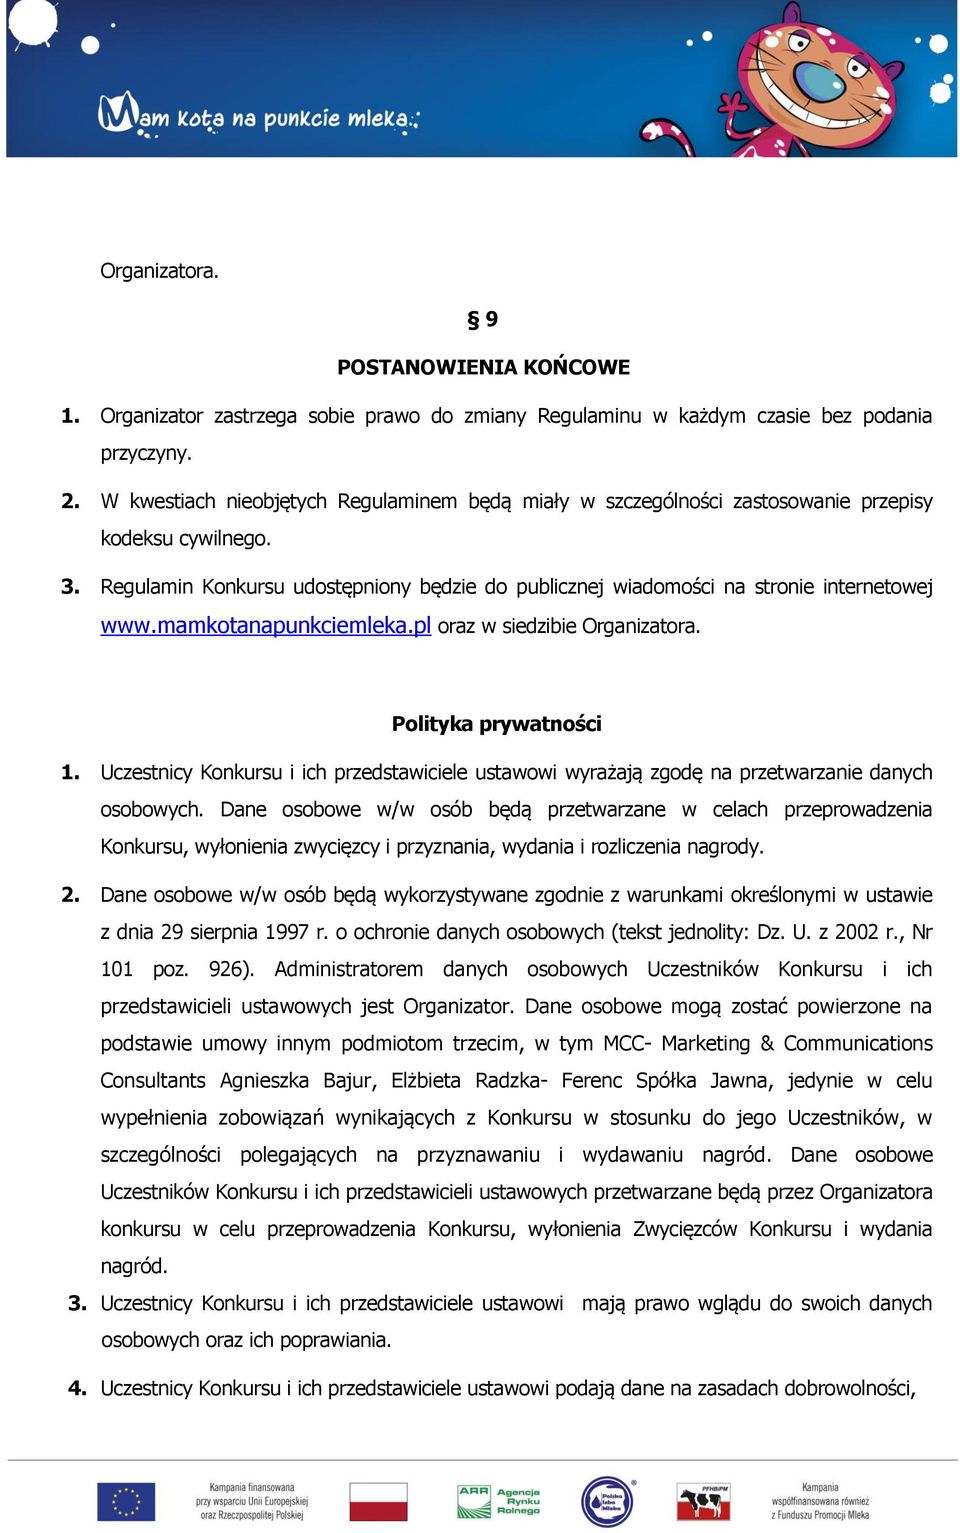 mamkotanapunkciemleka.pl oraz w siedzibie Organizatora. Polityka prywatności 1. Uczestnicy Konkursu i ich przedstawiciele ustawowi wyrażają zgodę na przetwarzanie danych osobowych.